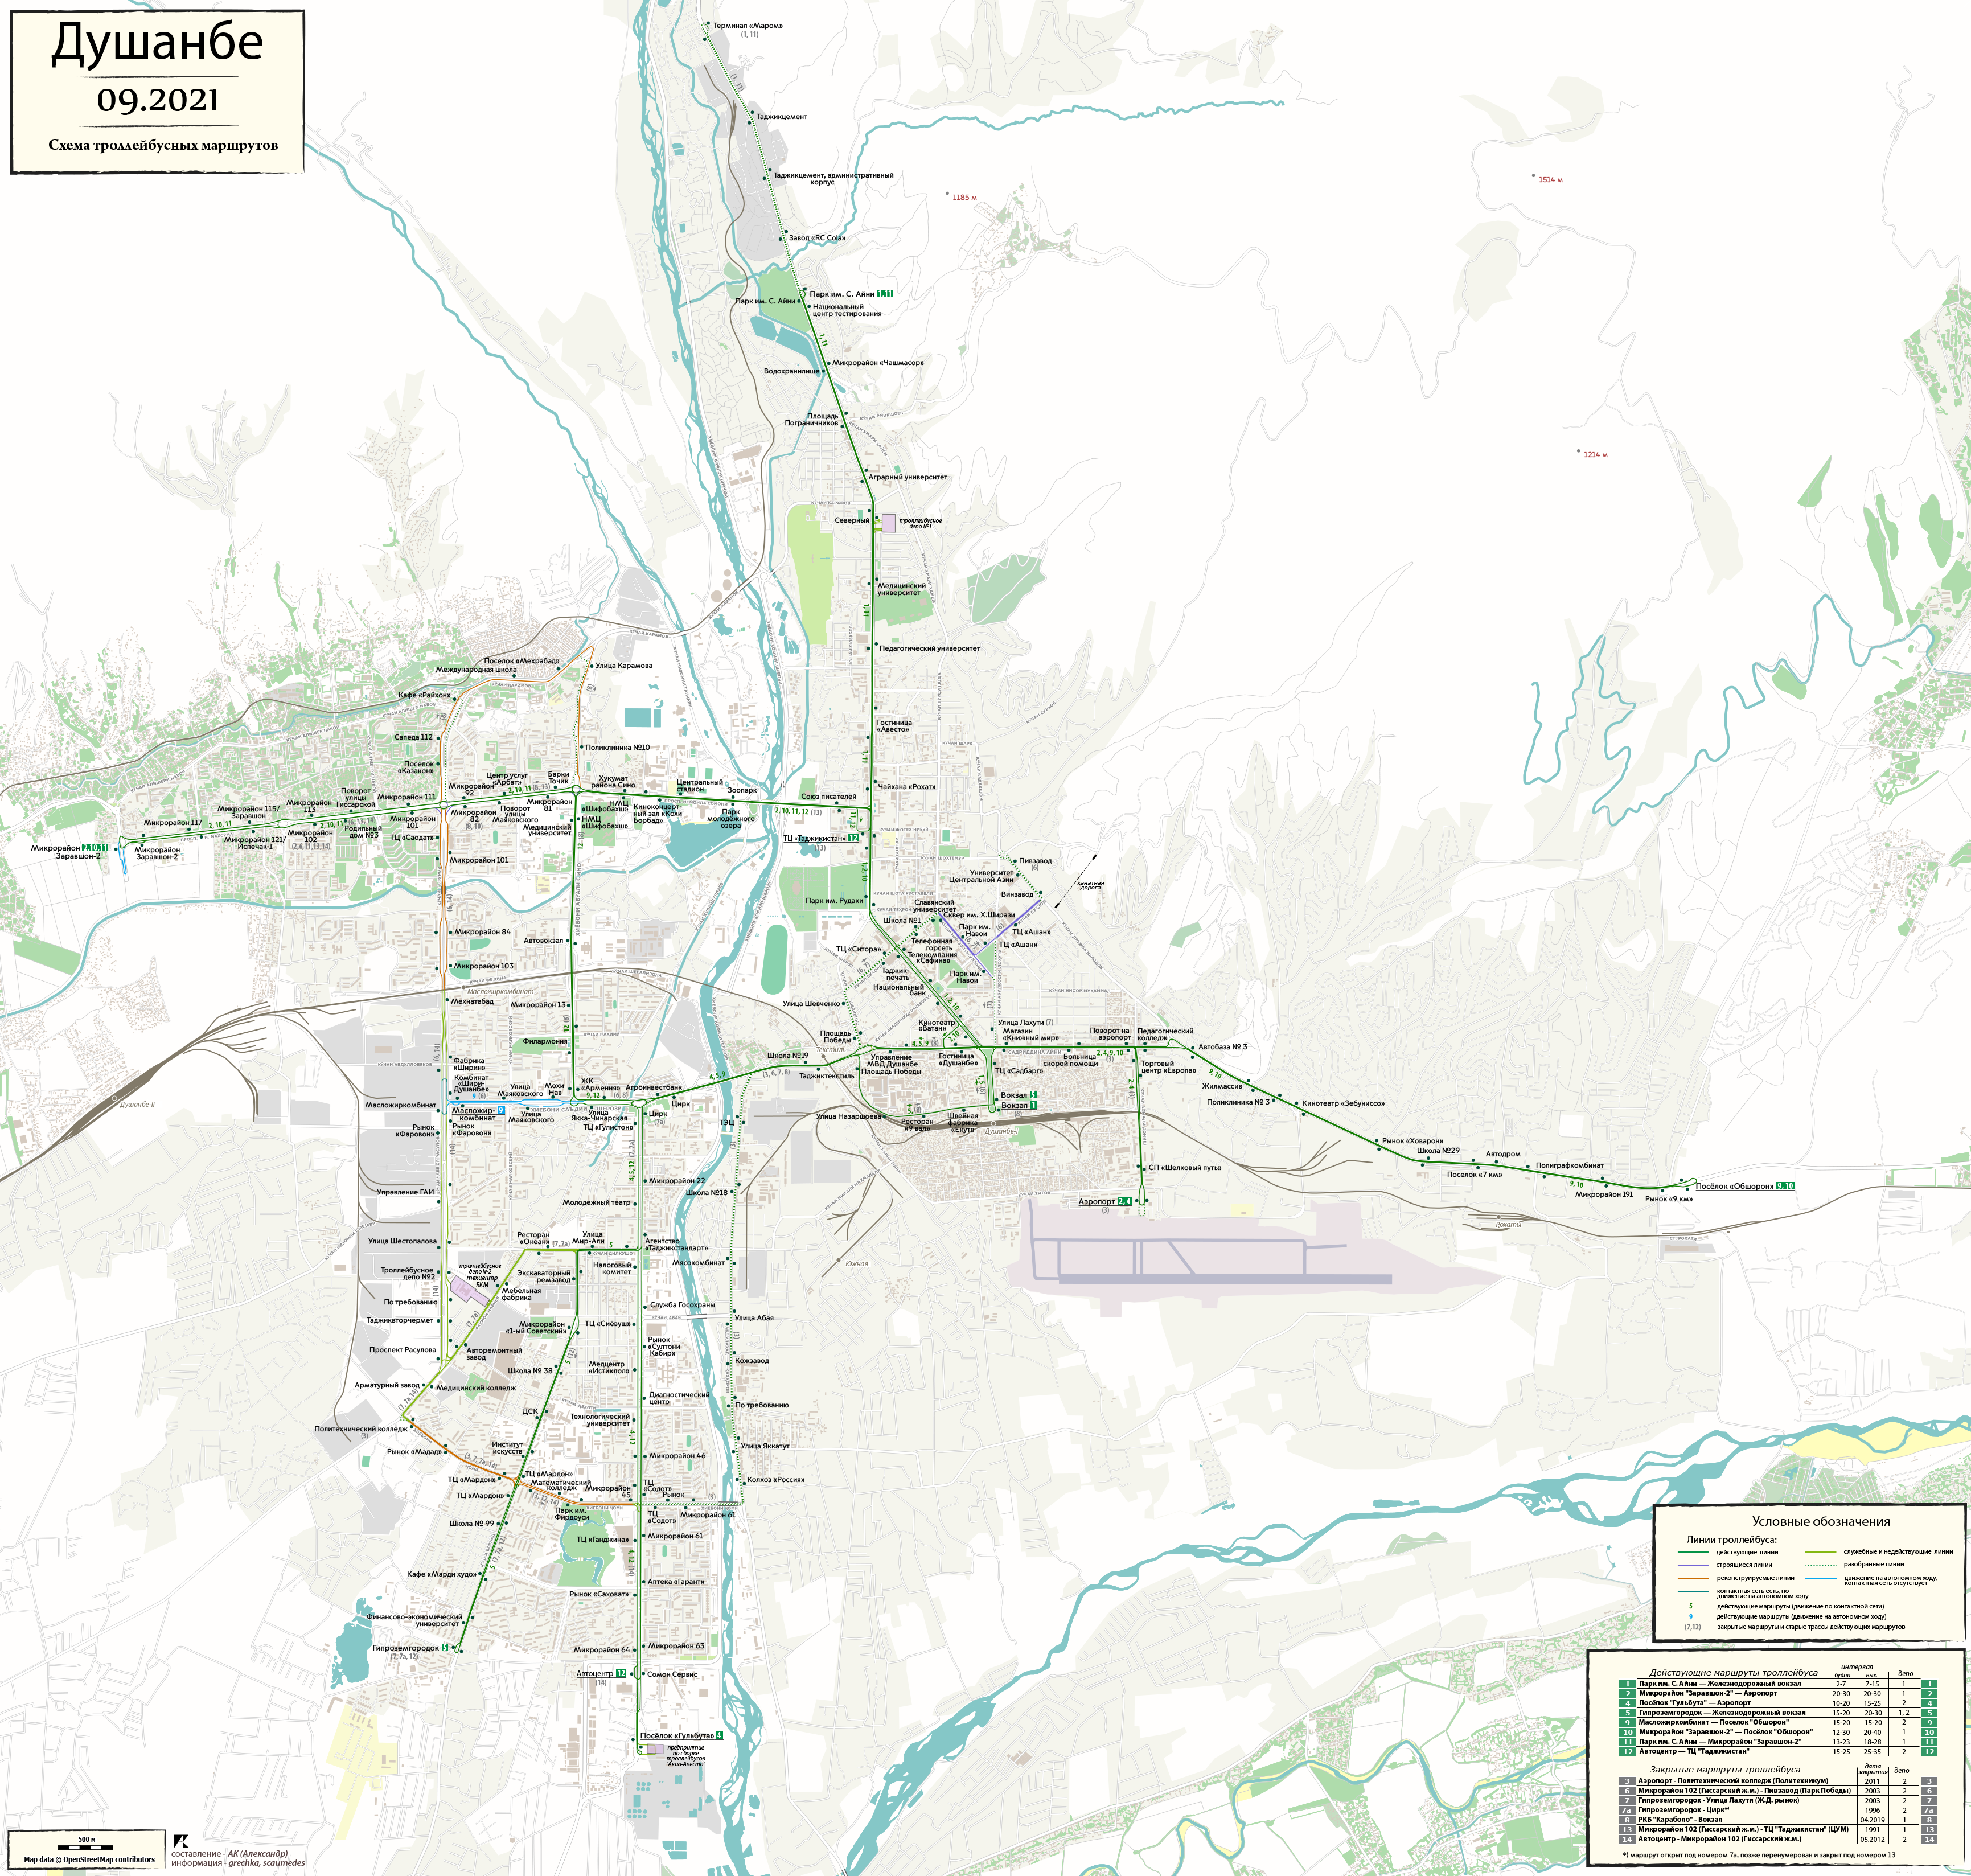 Dushanbe — Maps